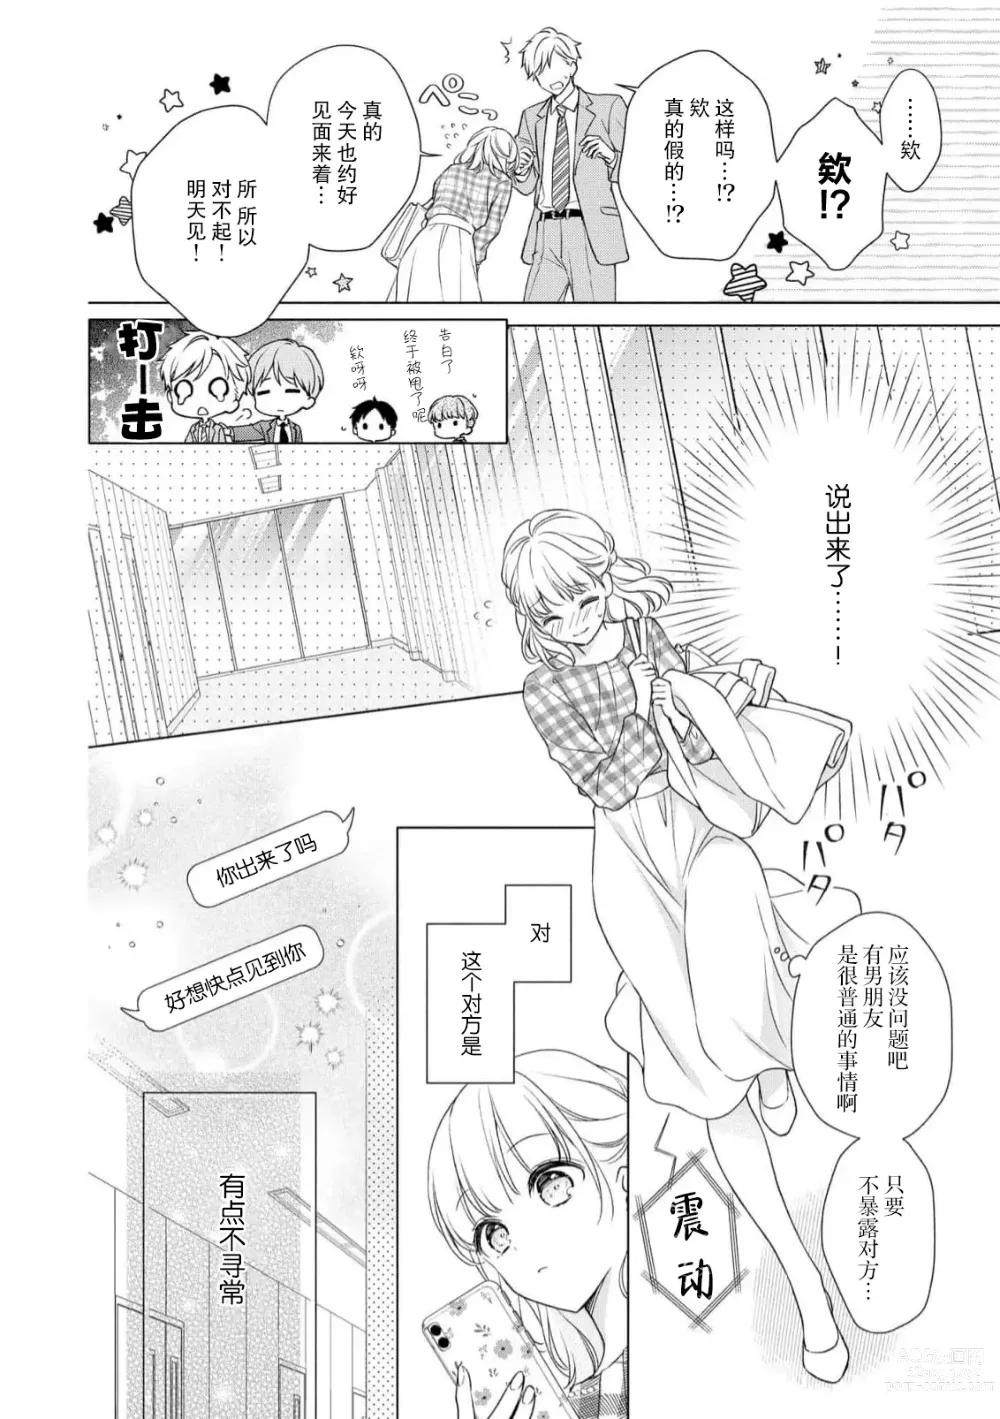 Page 5 of manga 宠爱社长贪恋我 ~用甘甜的毒将深处也融化~